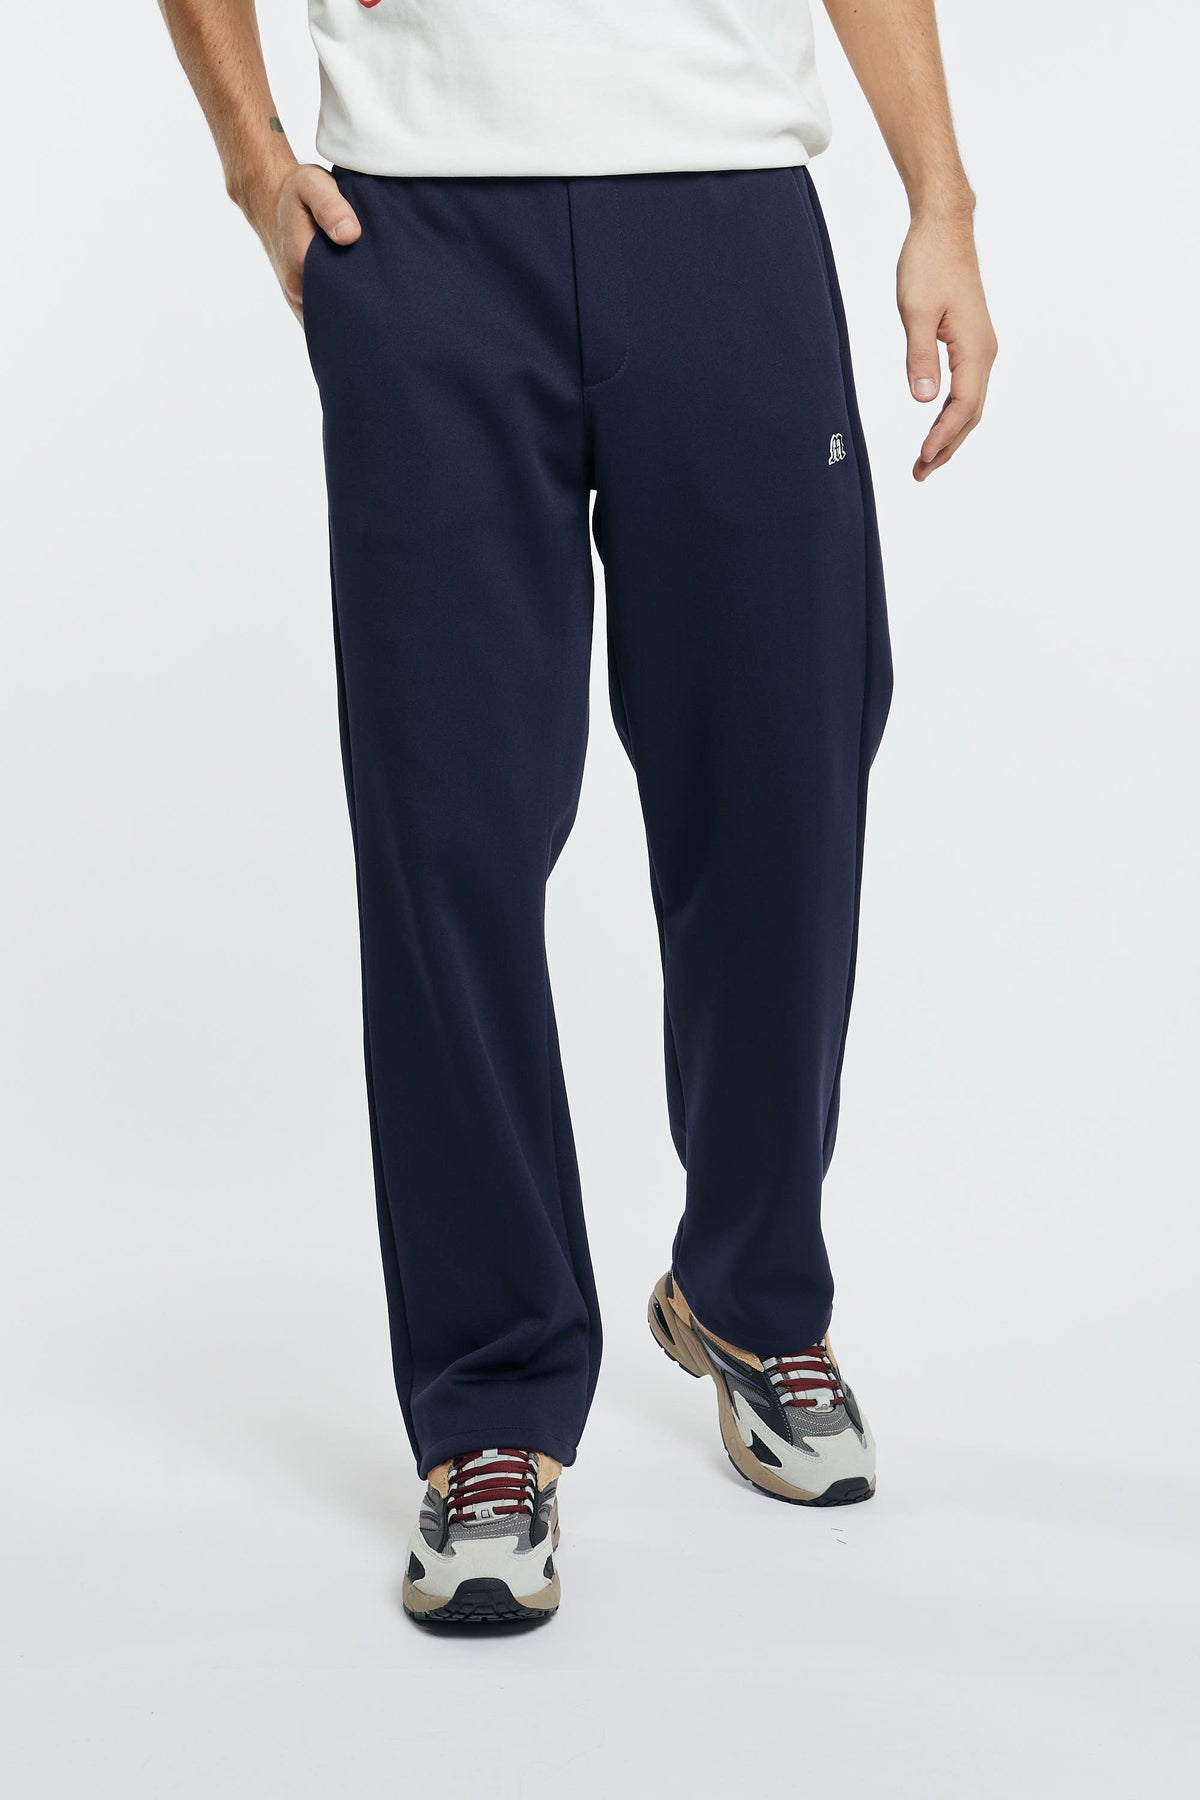 MSGM Pantalone Jogger Blu in Poliestere/Cotone